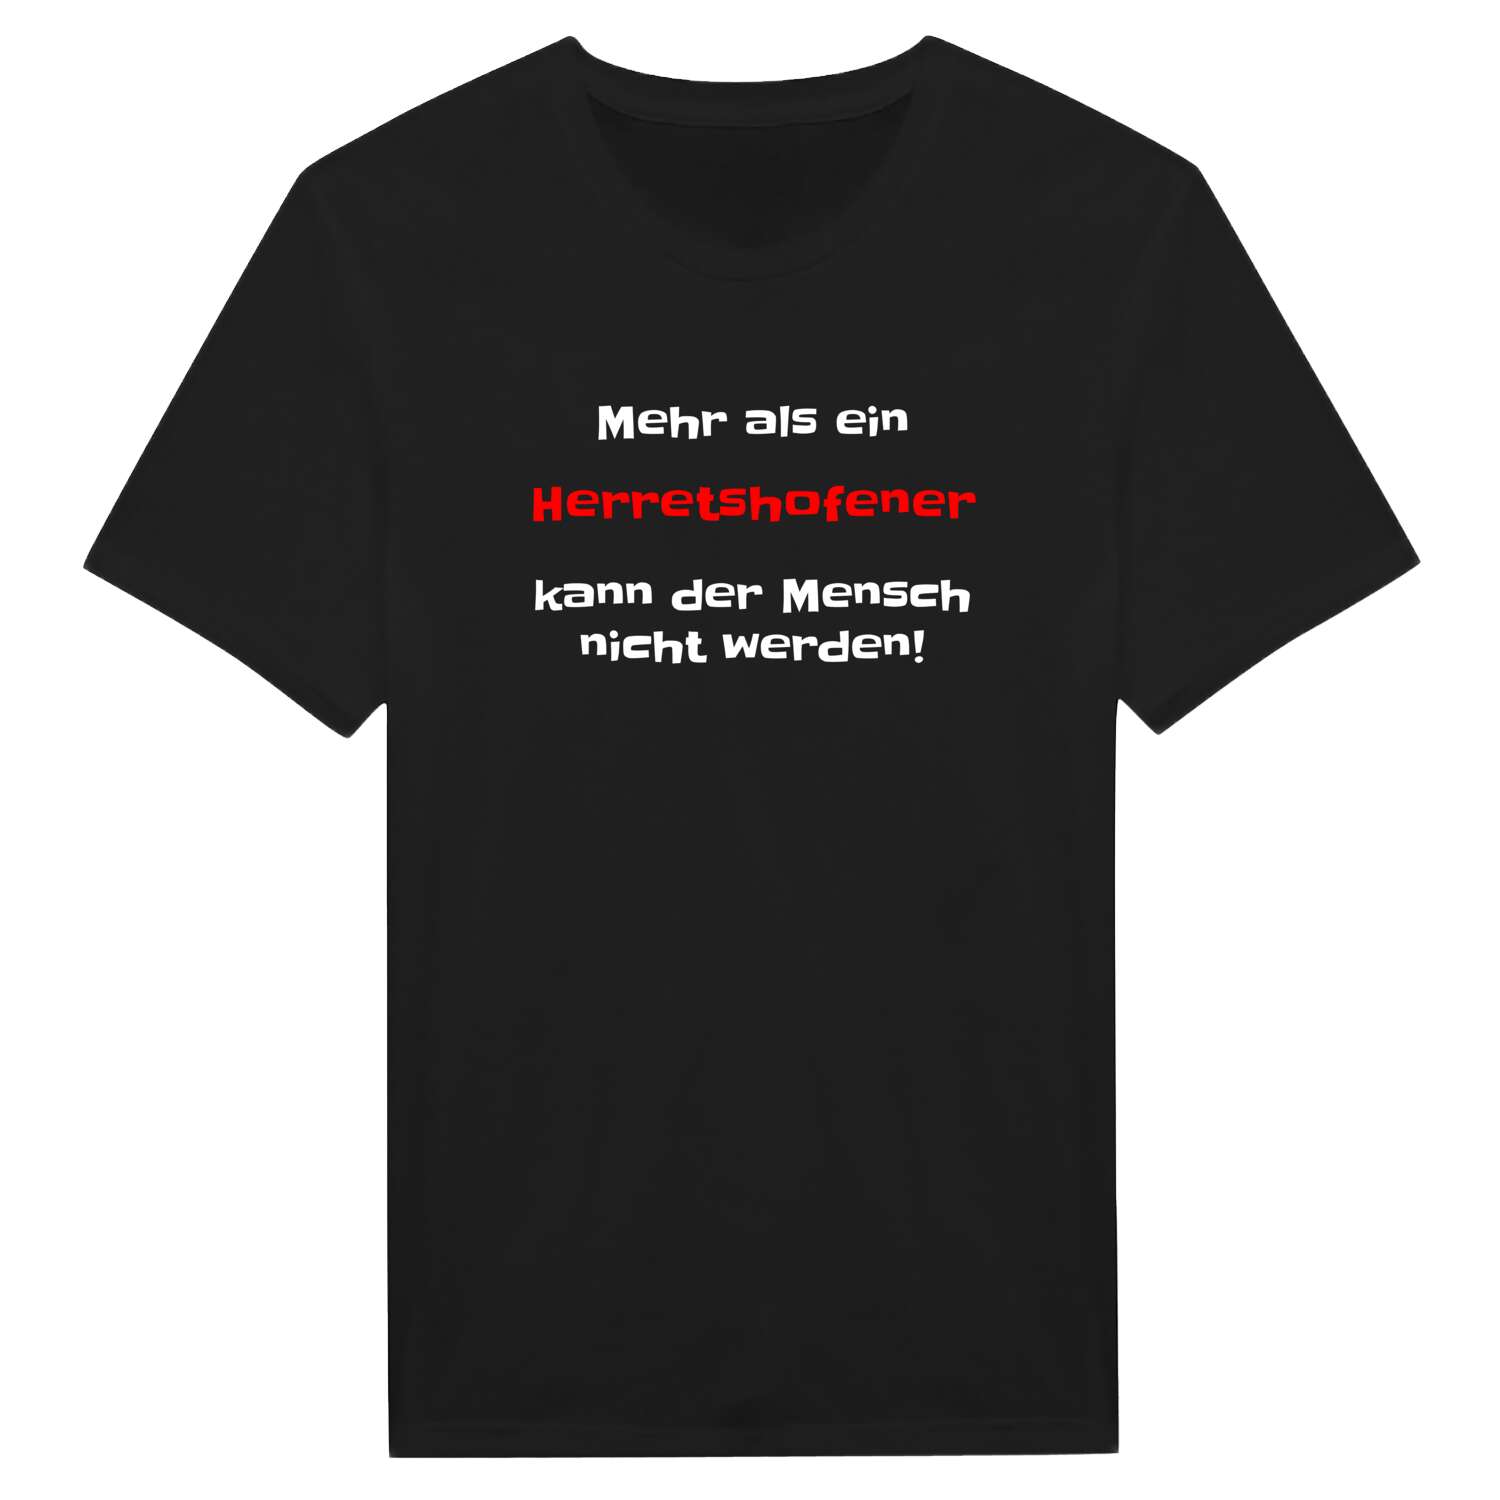 Herretshofen T-Shirt »Mehr als ein«